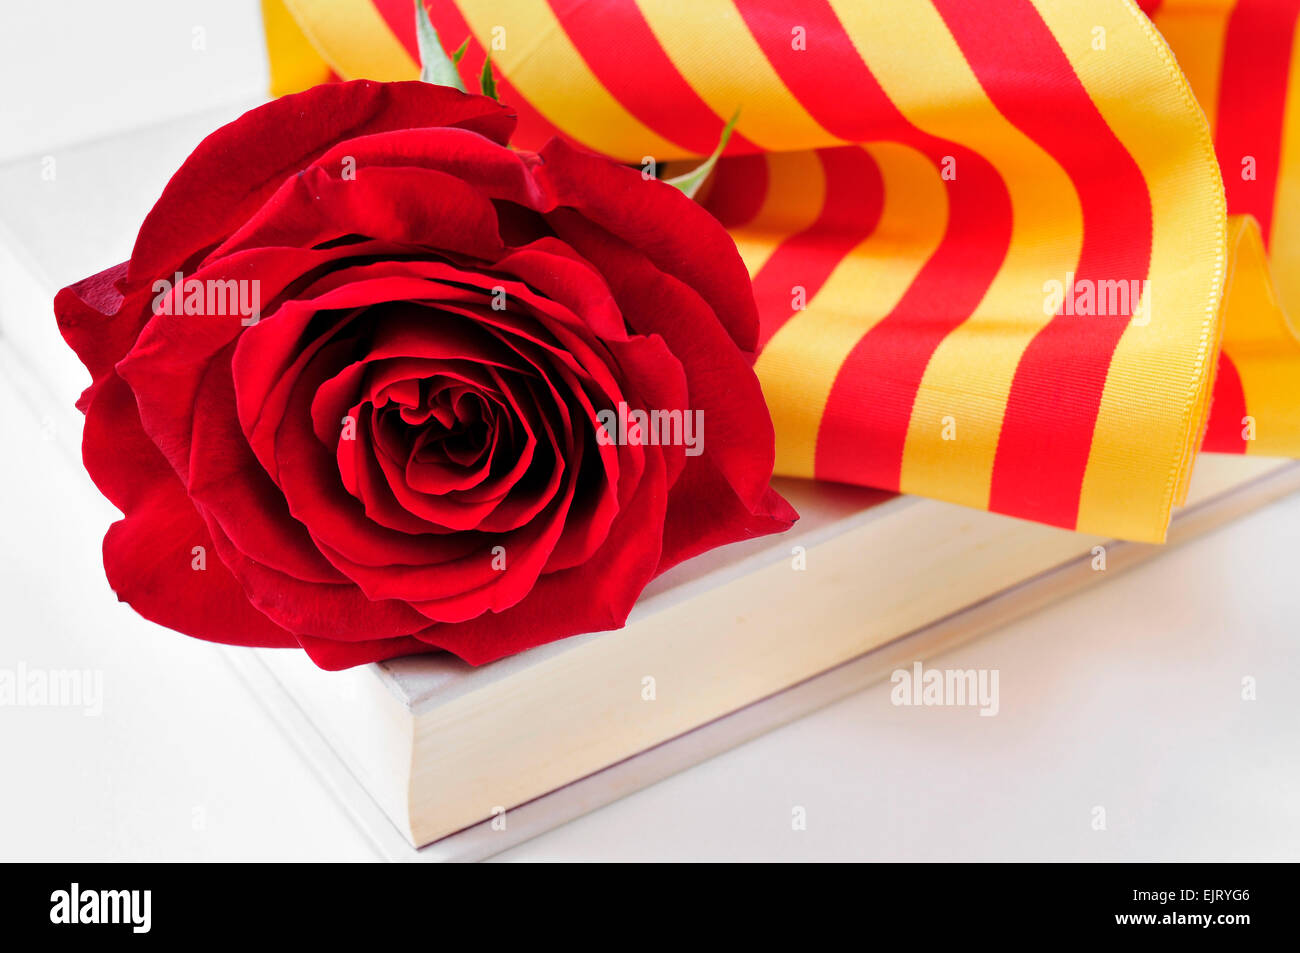 Une rose rouge et le drapeau catalan sur un livre pour Sant Jordi, le Saint Georges 24, lorsqu'il est tradition de donner des roses rouges et réservez Banque D'Images